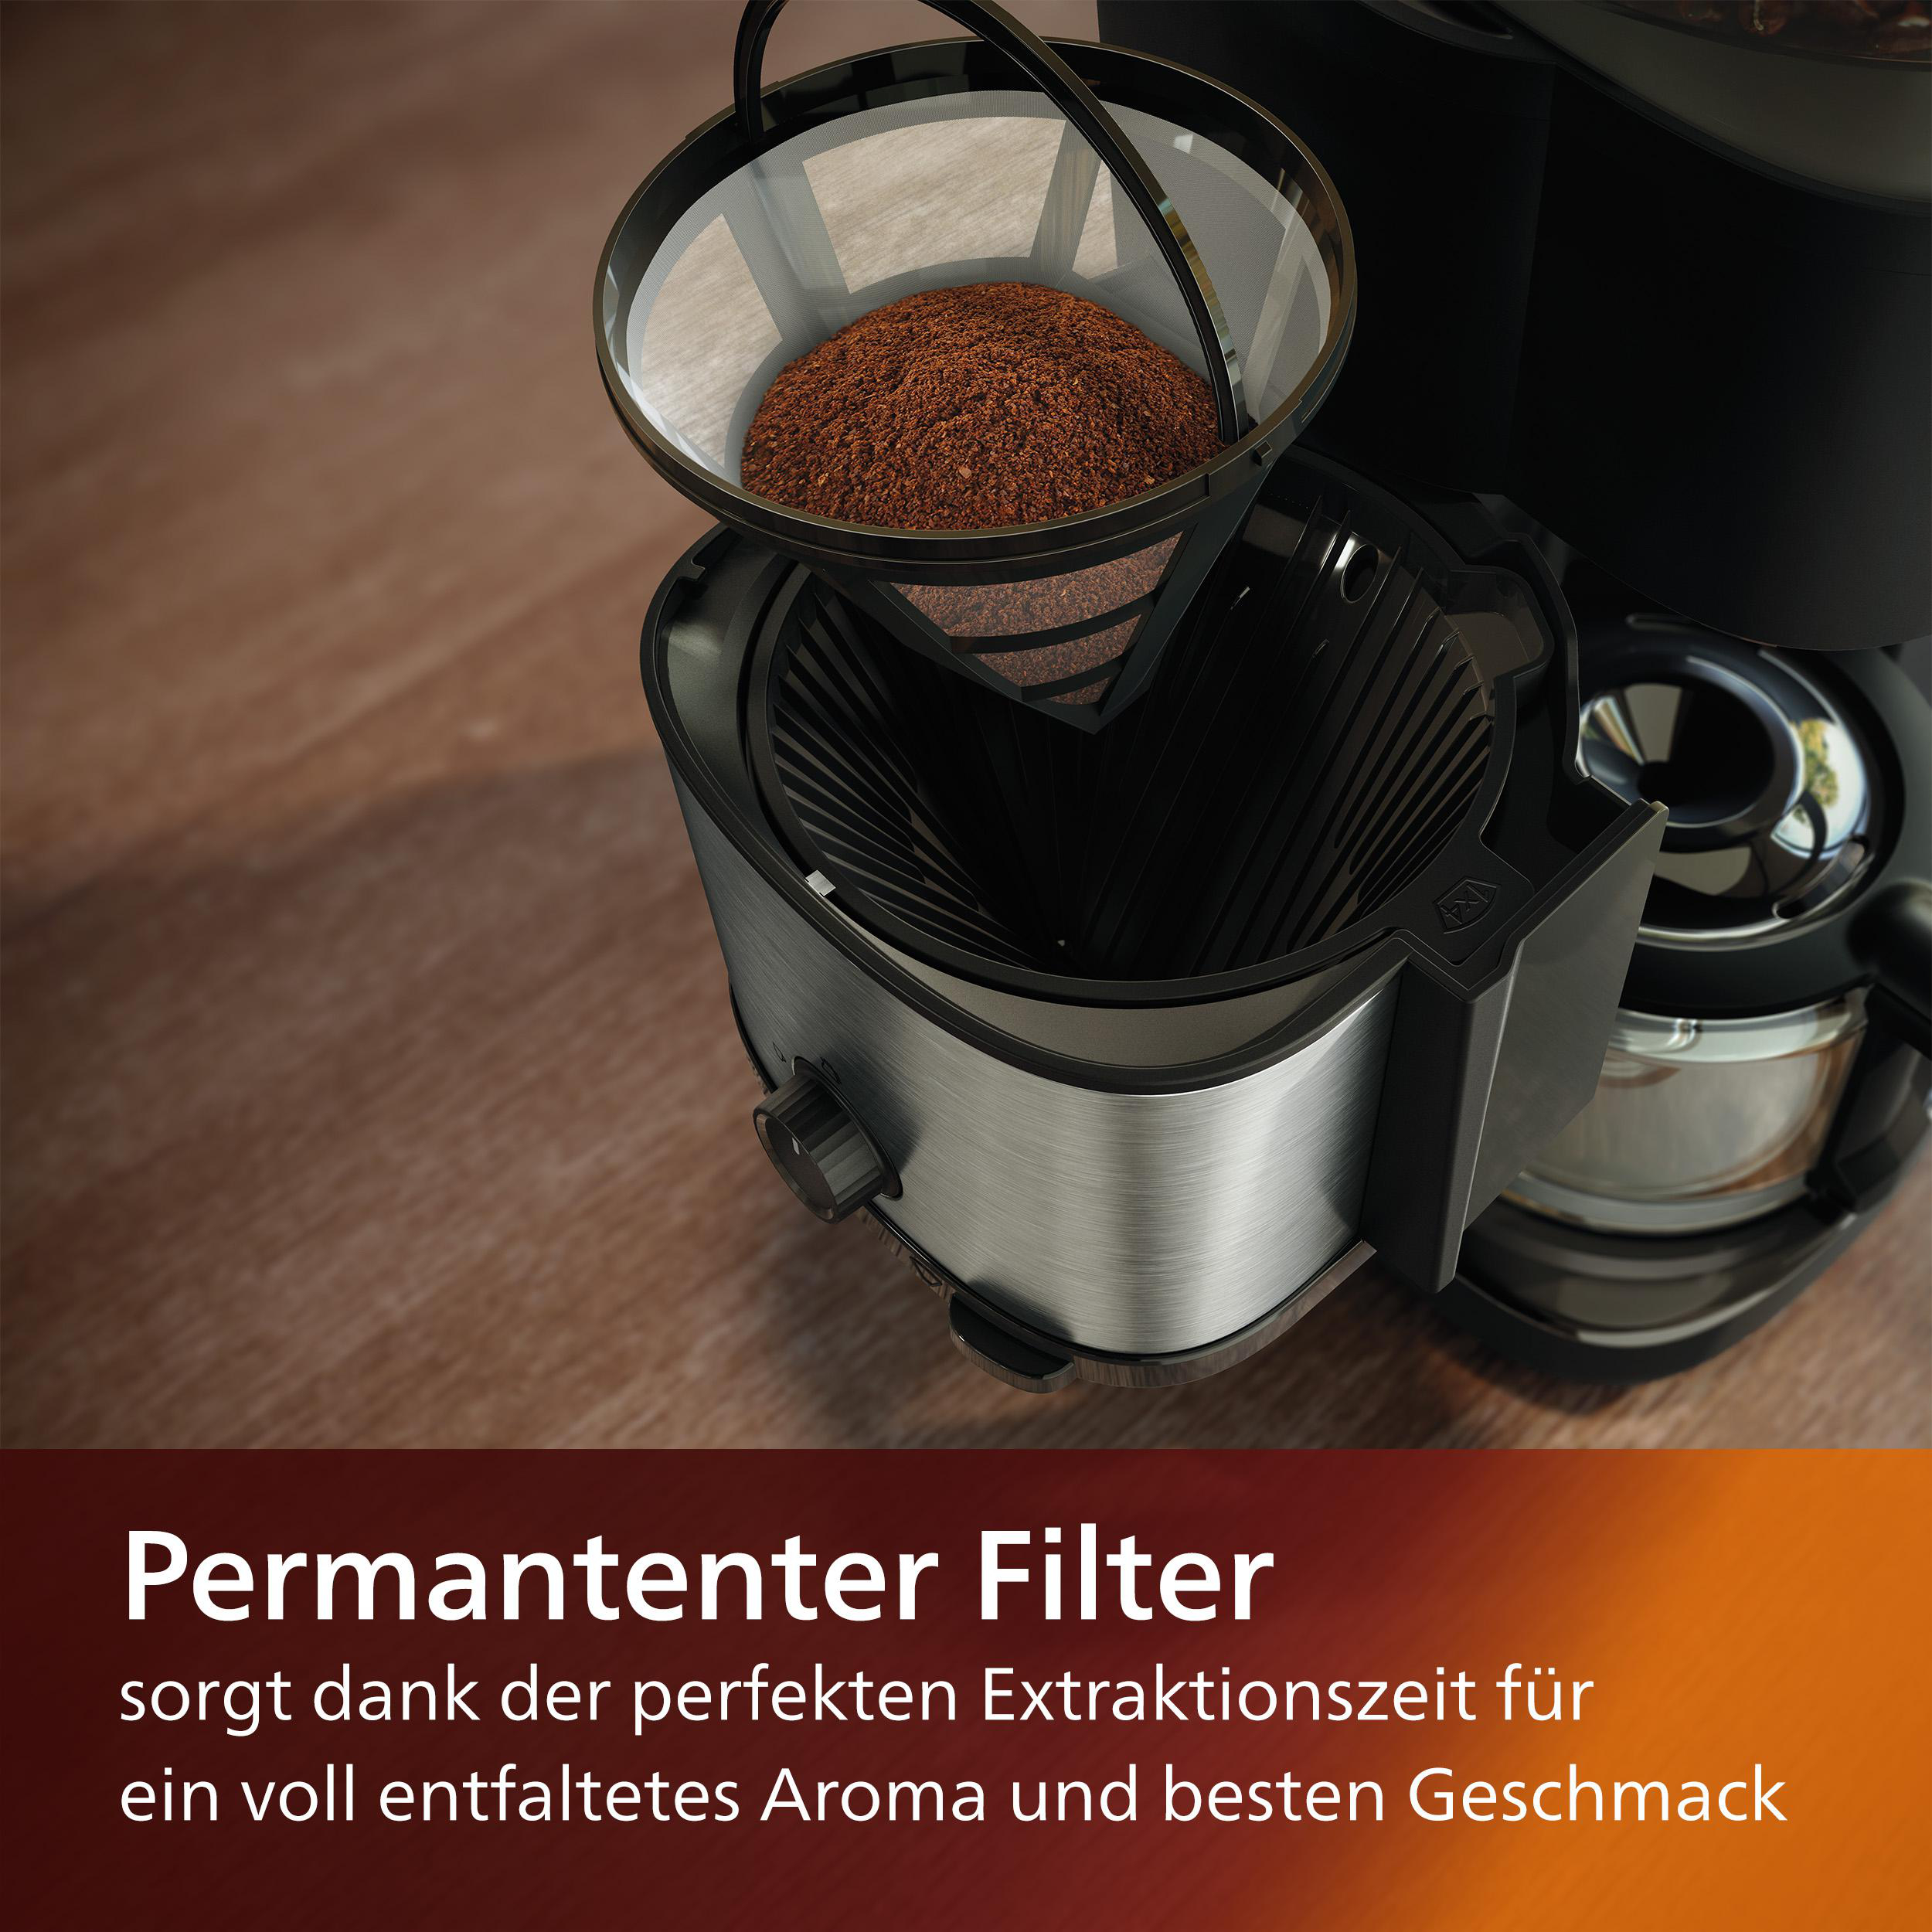 PHILIPS HD7900/50 All-in-1 Brew, mit Smart Dosierlöffel Dosierung Duo-Kaffeebohnenbehälter, Mahlwerk, und inkl. Permanentfilter Schwarz/Silber und Kaffeemaschine